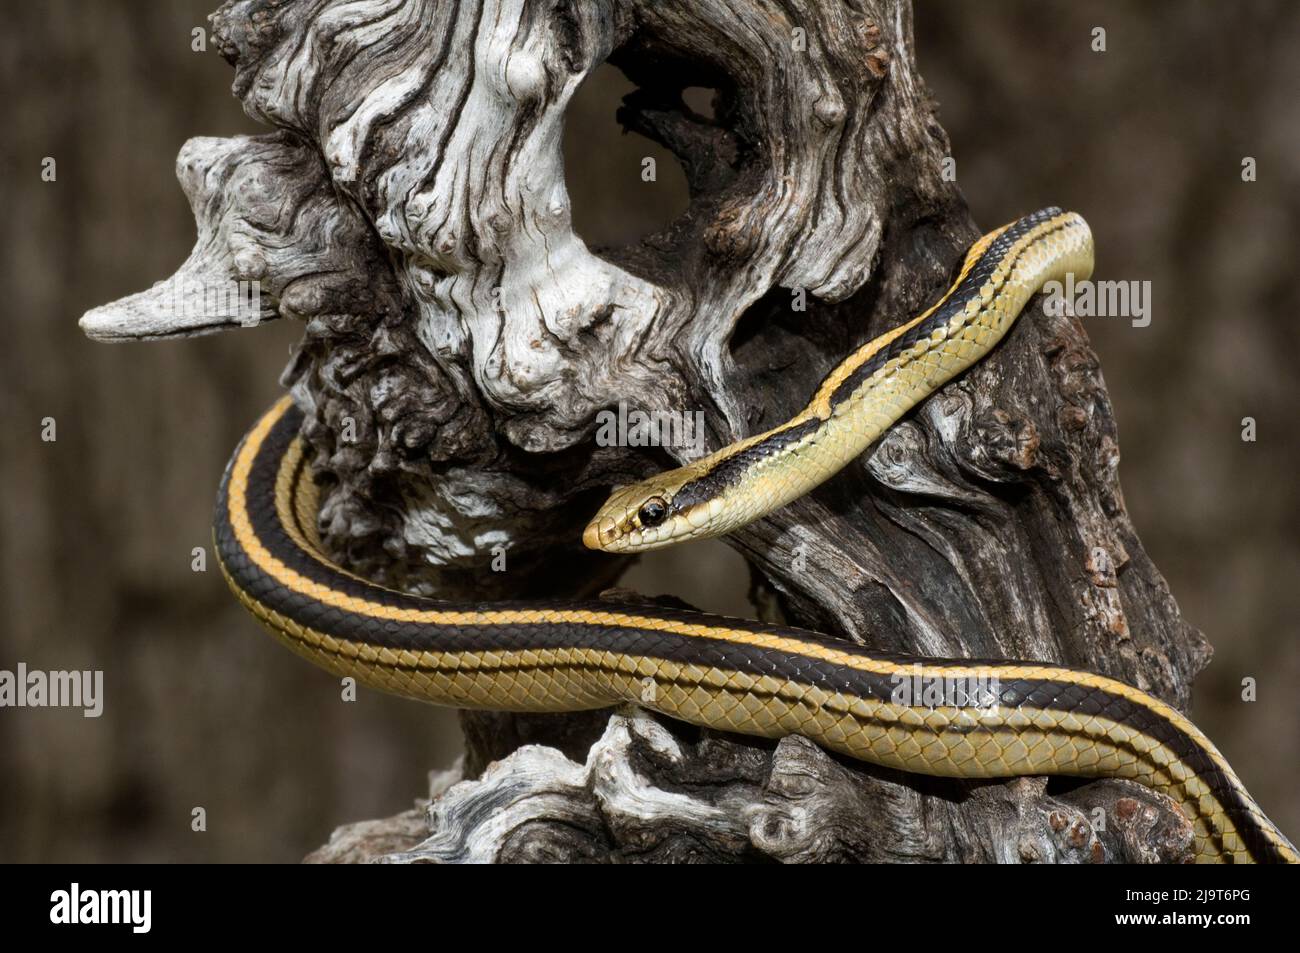 USA, Texas. Garter snake wrapped around tree. Stock Photo